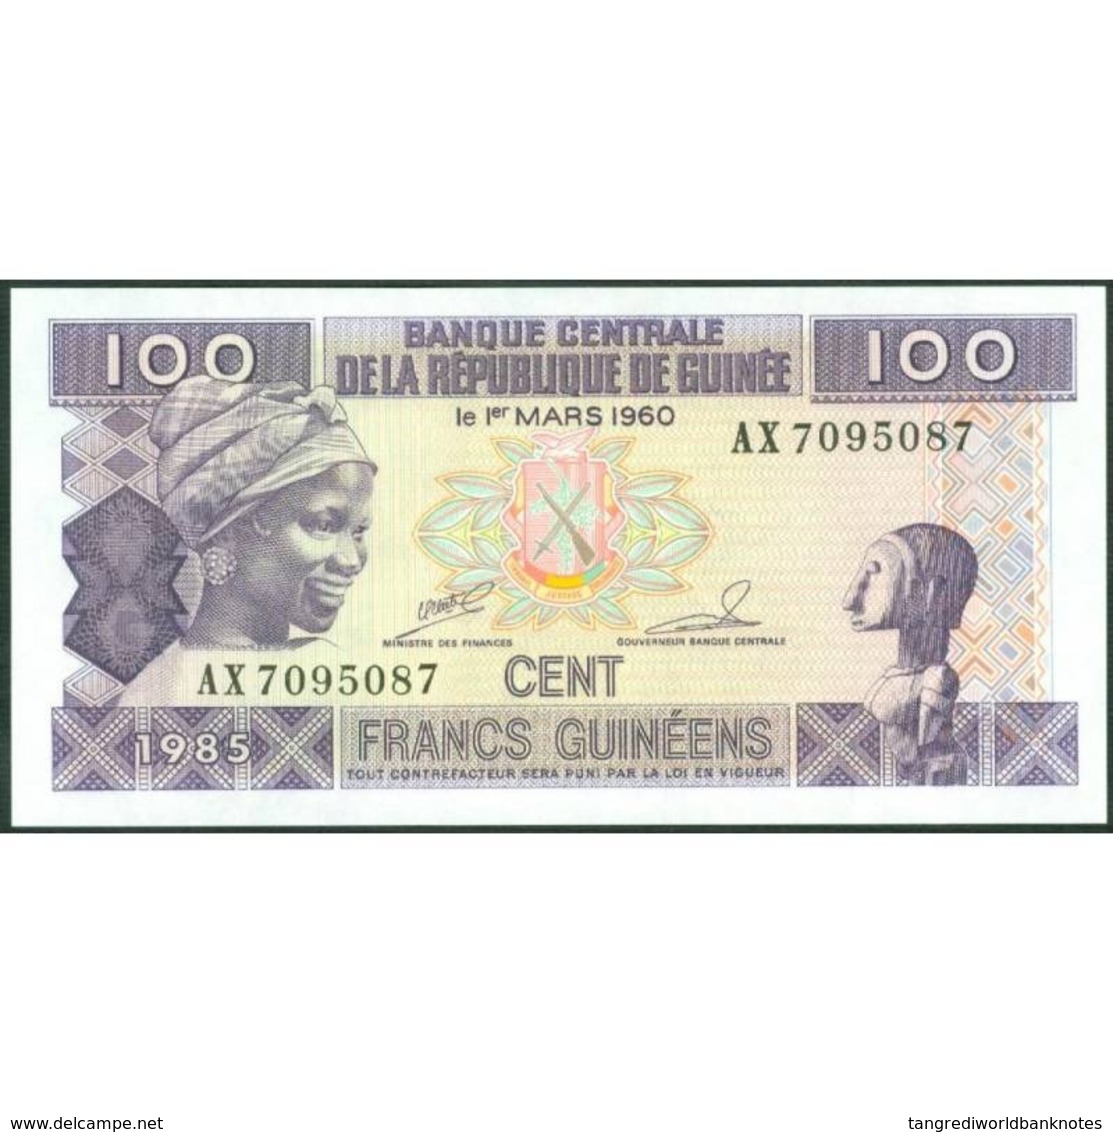 TWN - GUINEA 30a2 - 100 Francs 1985 Prefix AX - Without Serifs﻿ UNC - Guinea